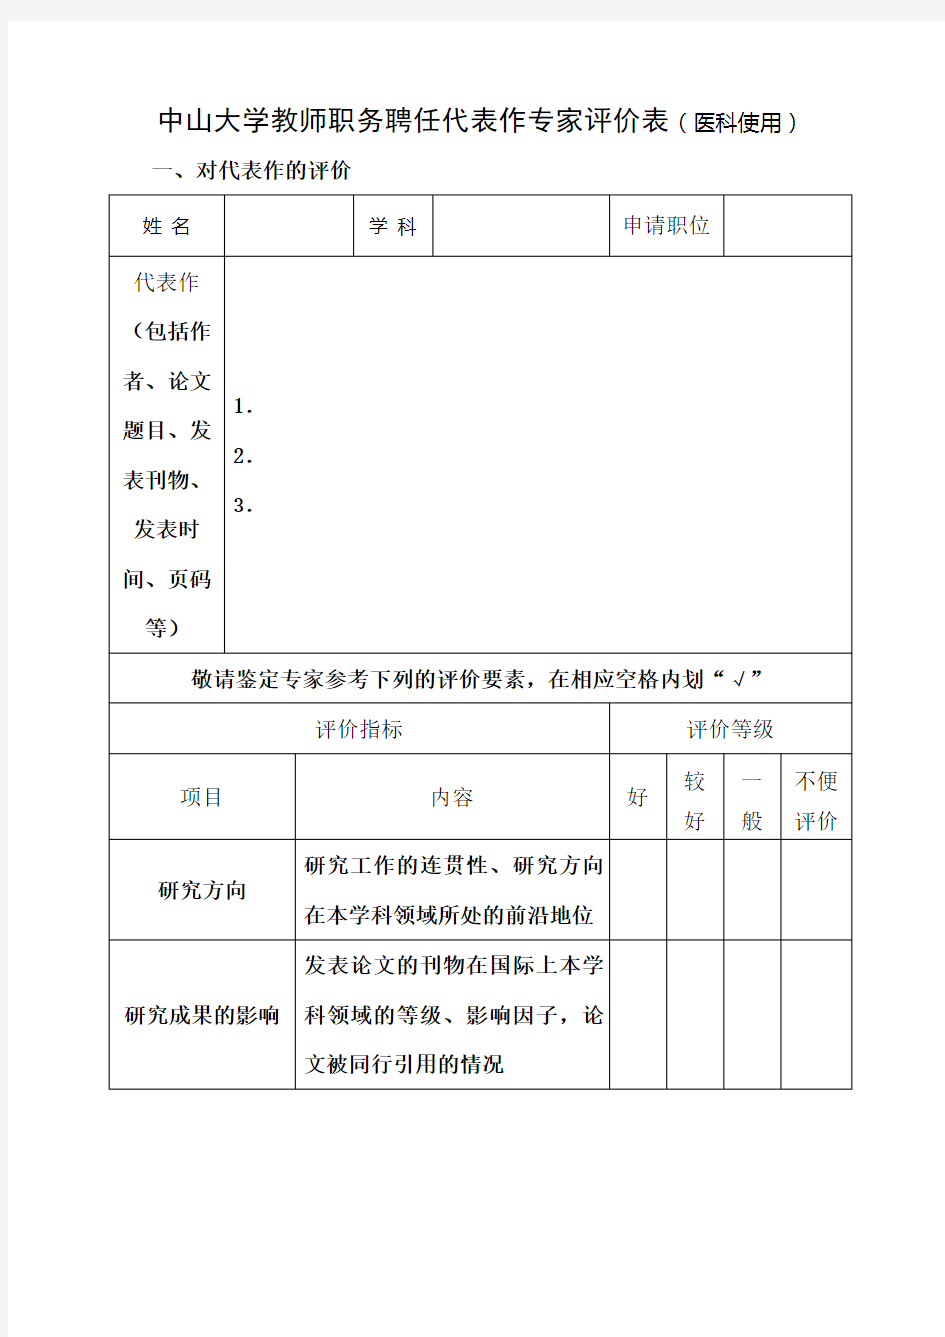 中山大学教师职务聘任代表作专家评价表(医科使用)